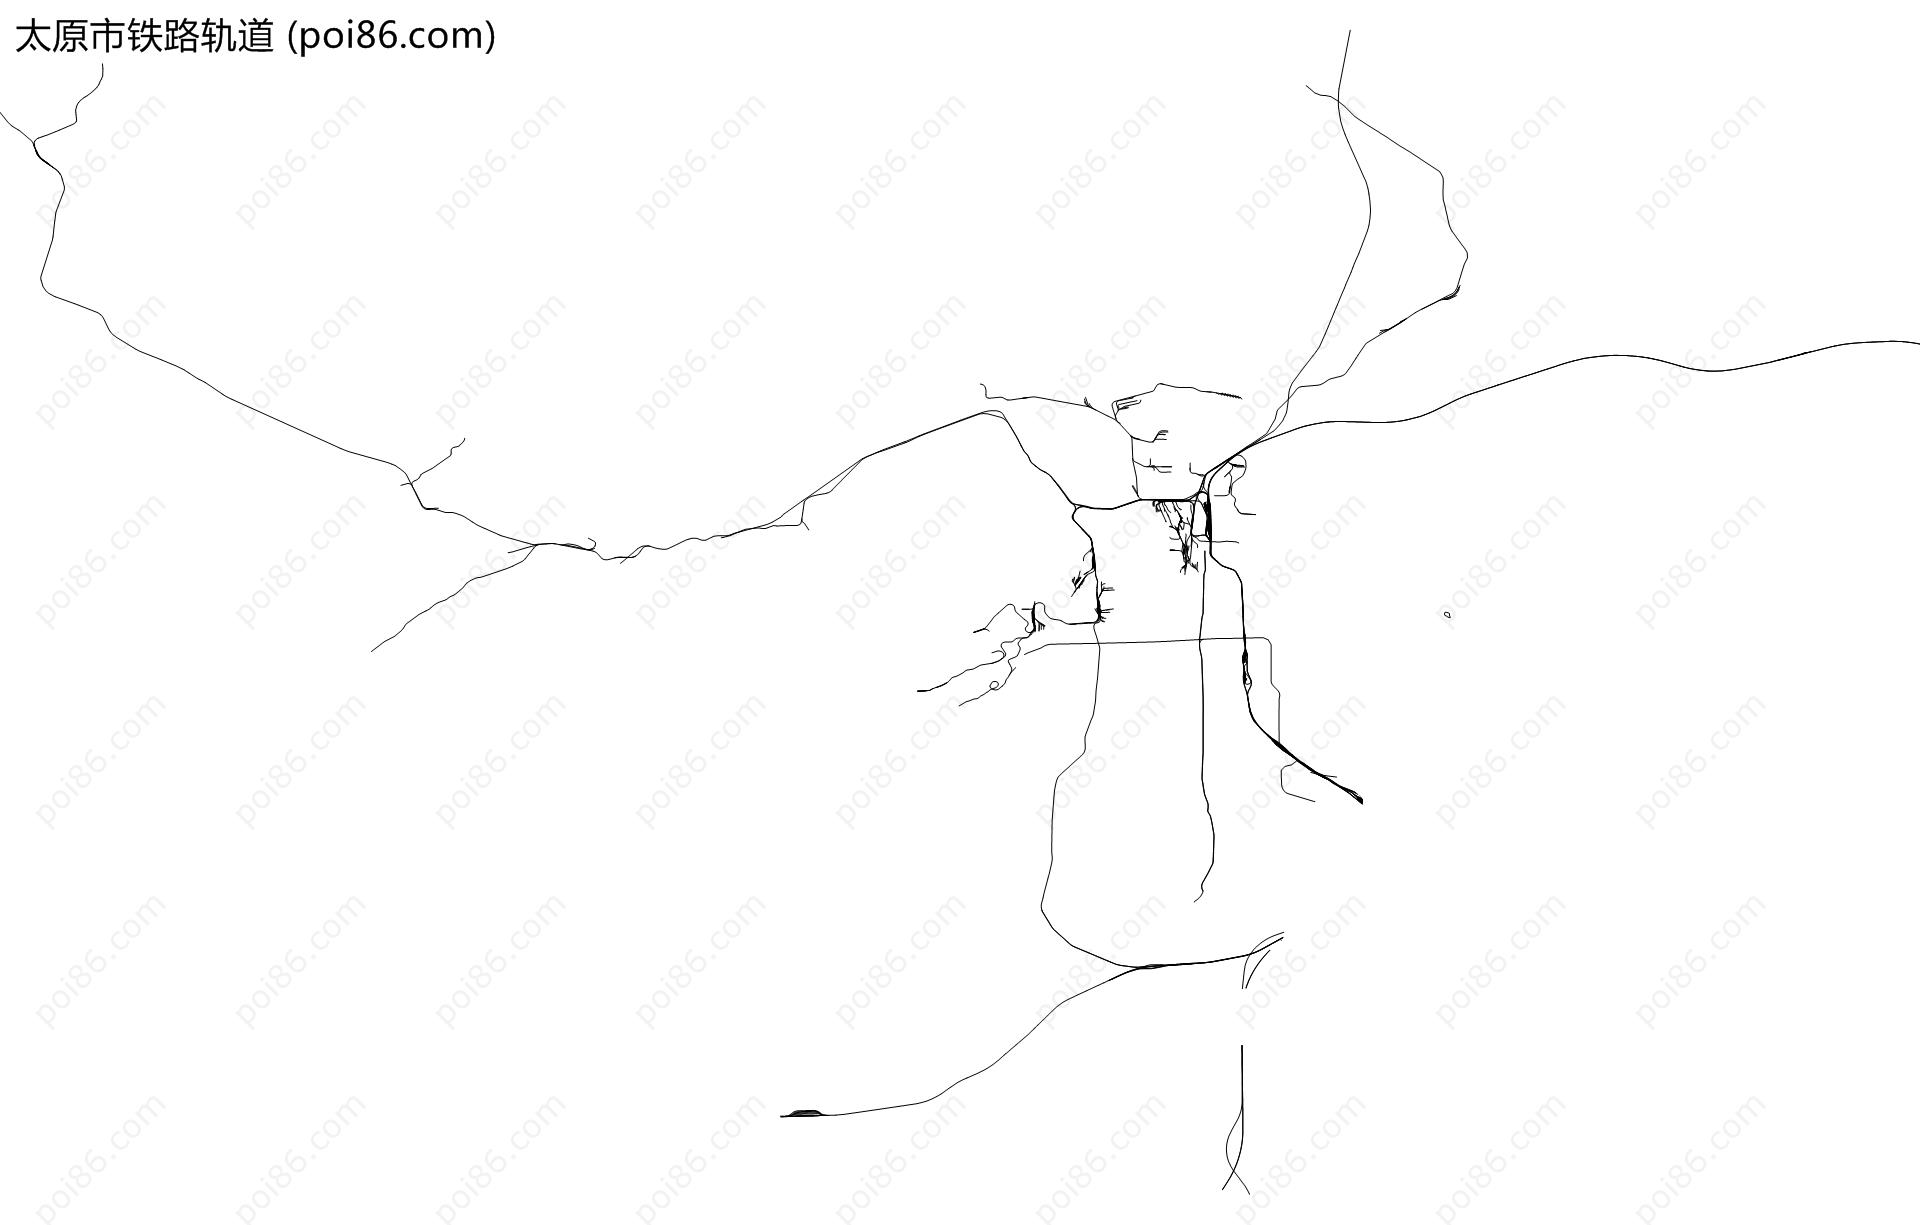 太原市铁路轨道地图